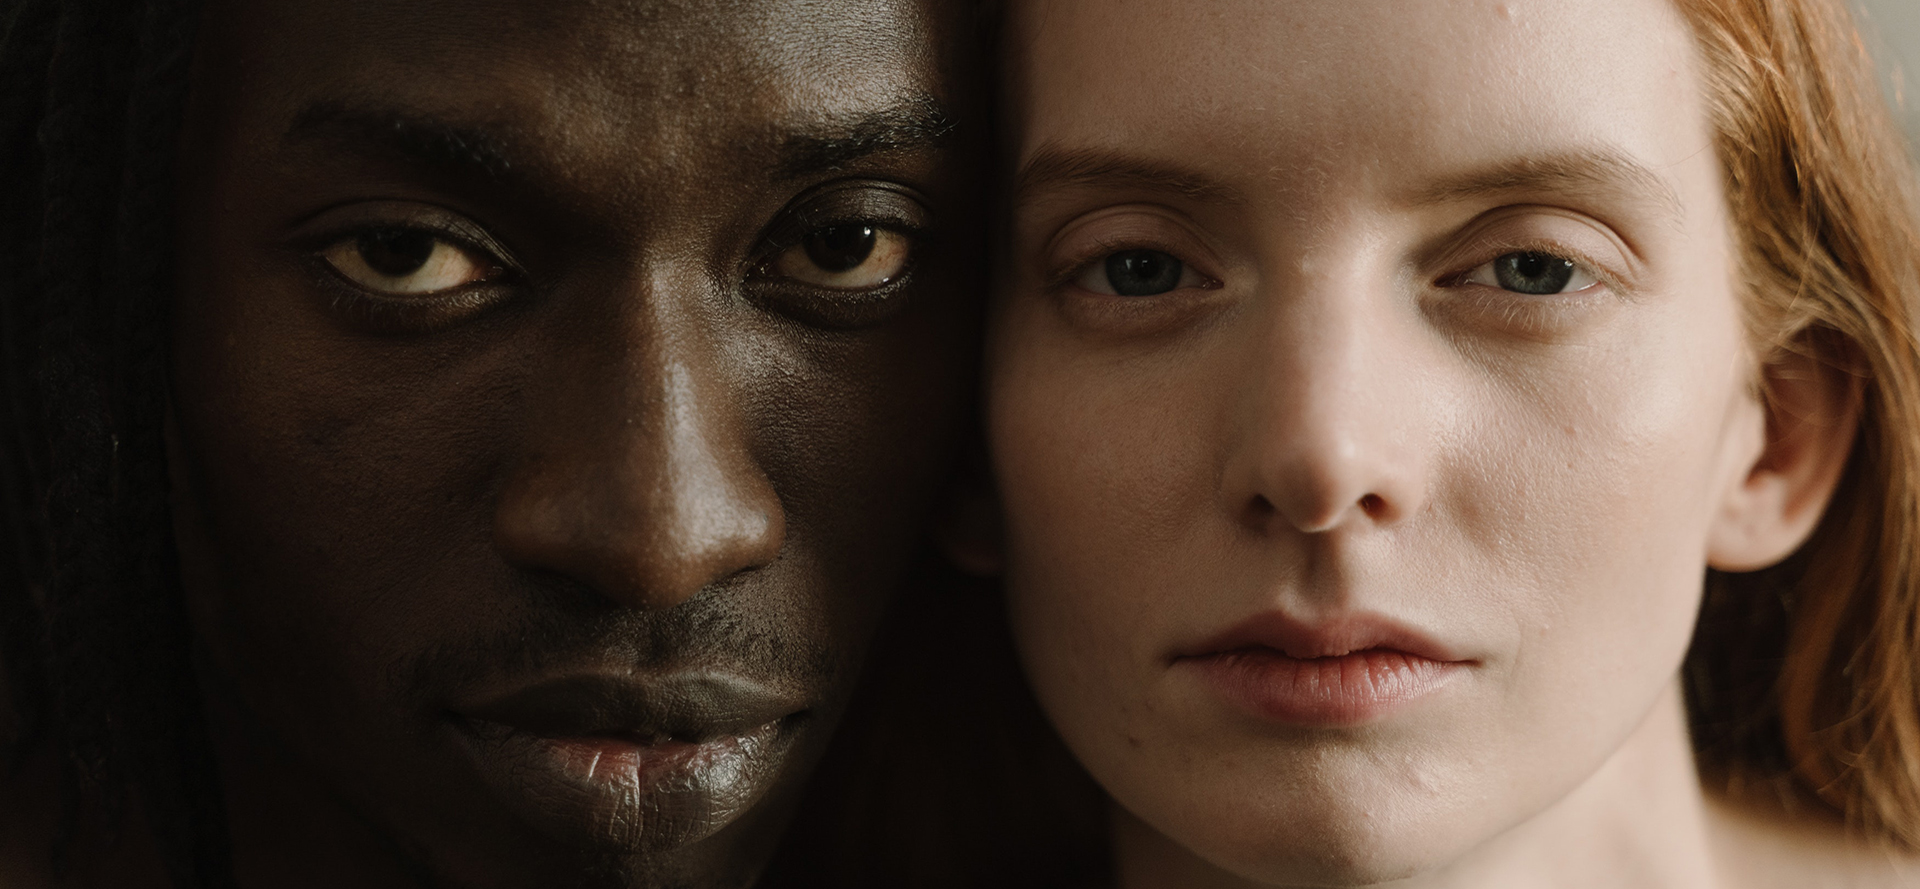 Et portræt ansigt til ansigt af en sort mand og en hvid kvinde.